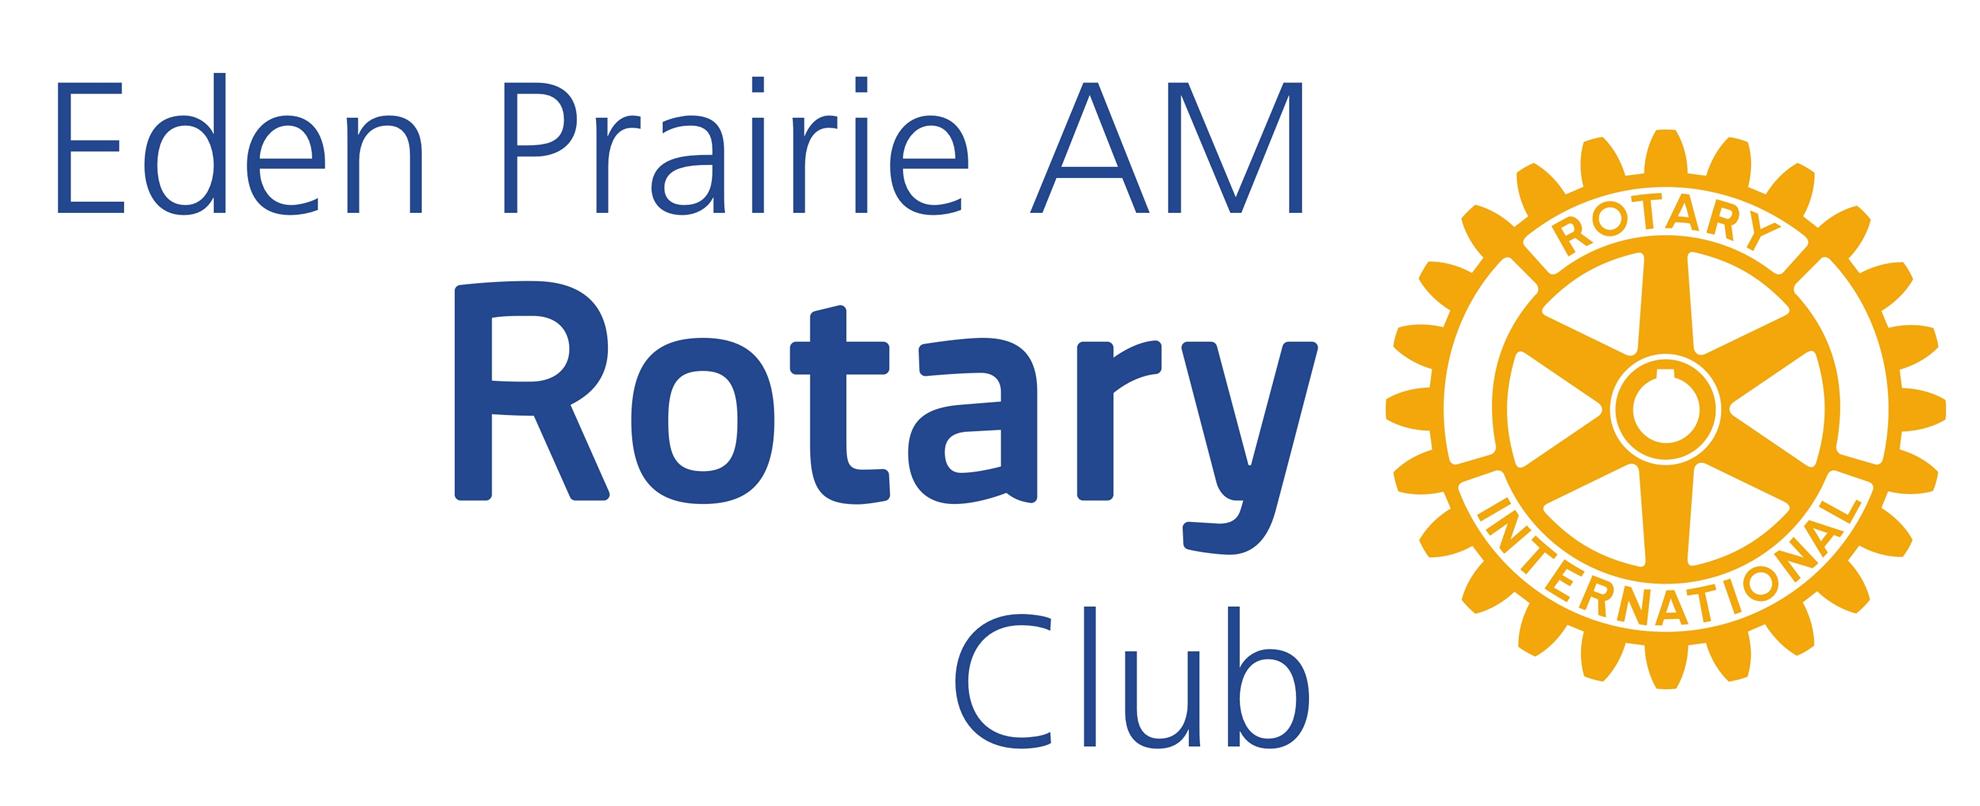 Eden Prairie AM Rotary Club